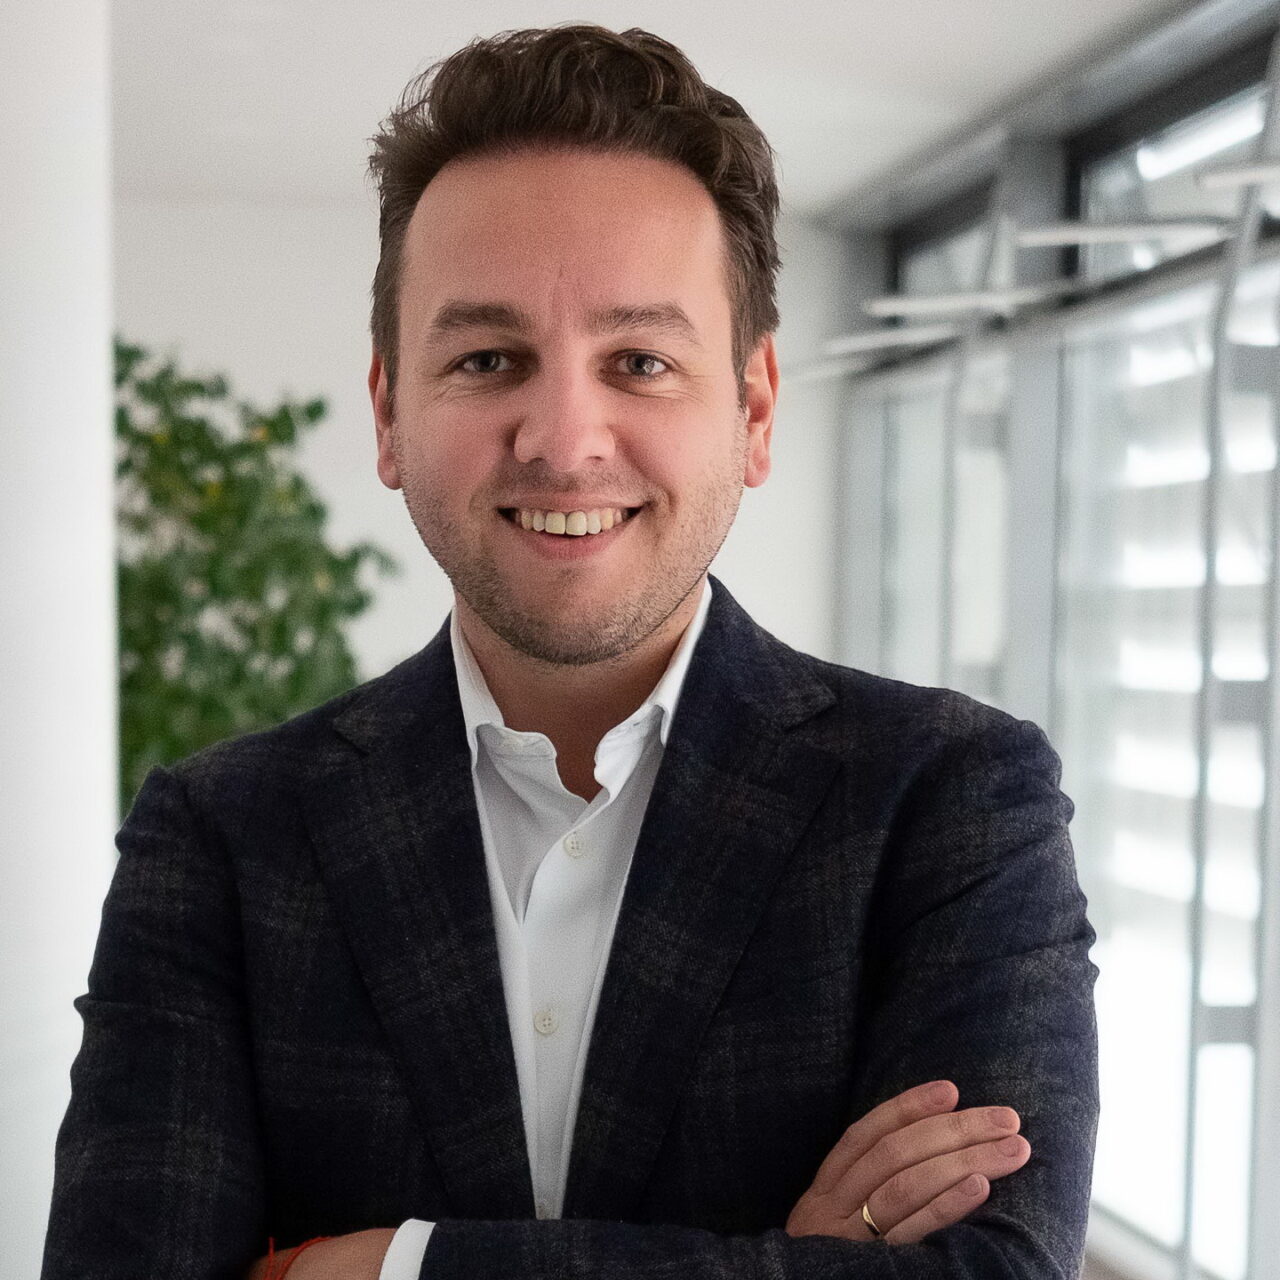 Nick Deppe ist neuer CEO von Emeria Germany